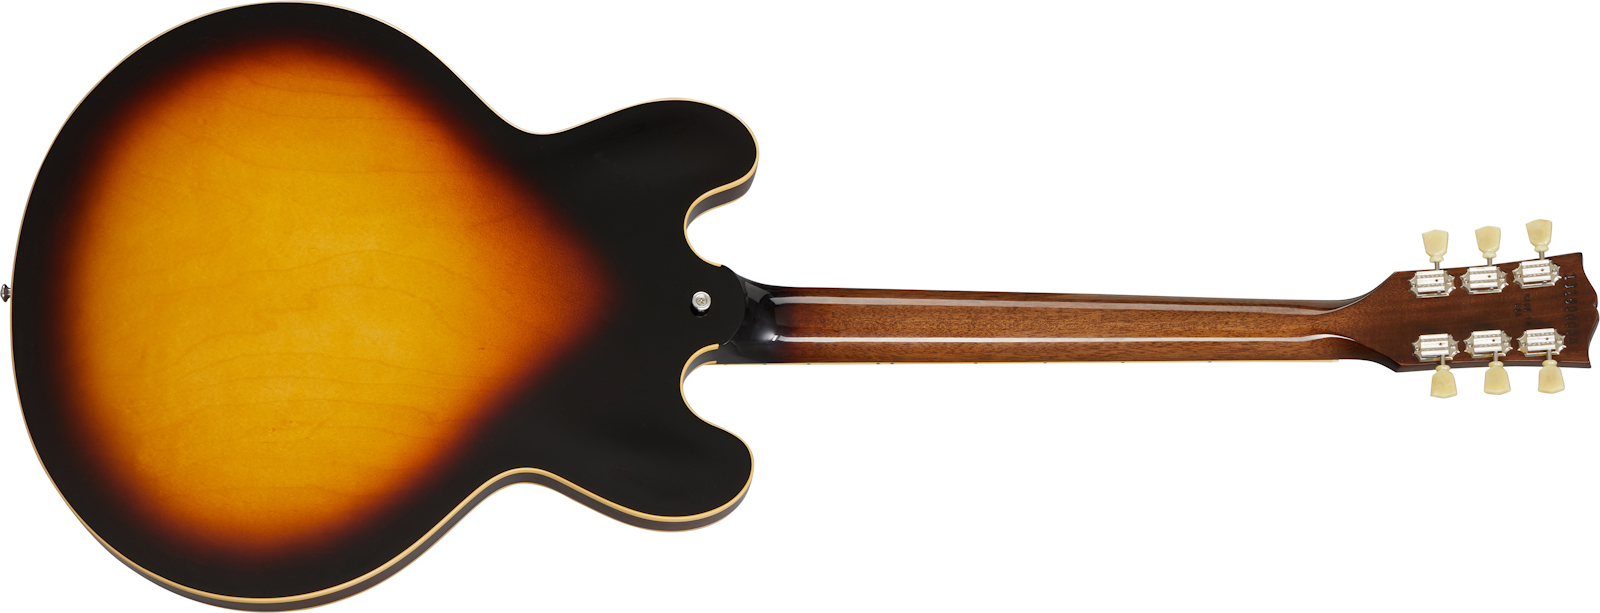 Gibson Es-335 Dot Lh Original 2020 Gaucher 2h Ht Rw - Vintage Burst - Guitarra electrica para zurdos - Variation 1